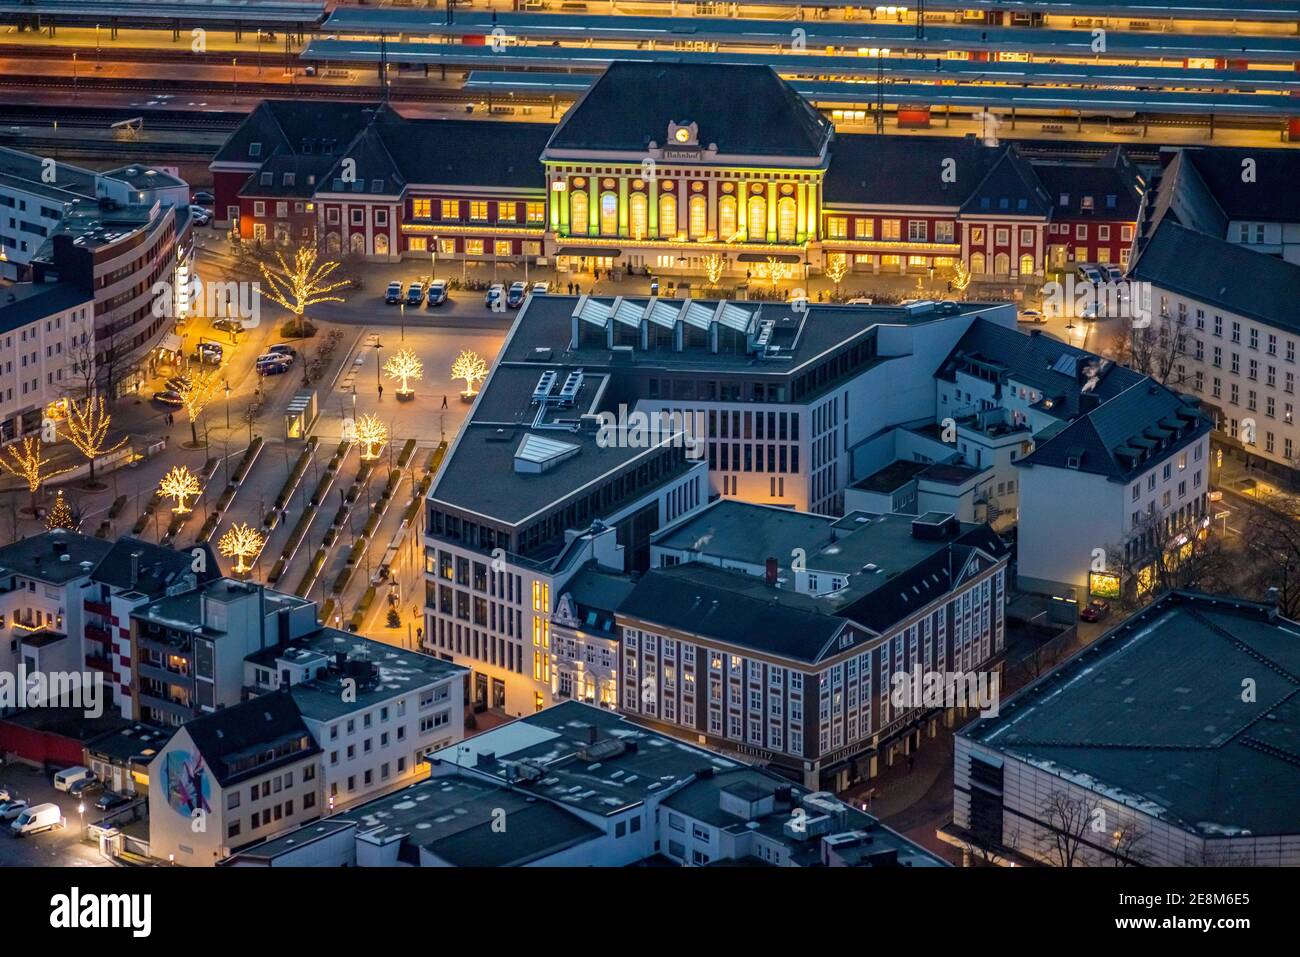 Vue aérienne, vue de nuit de la gare centrale de Hamm, parvis de la gare, bibliothèque de Hamm, Platz der deutschen Einheit, Bahnhofstraße, Neue Bahnhofstraße,Herli Banque D'Images